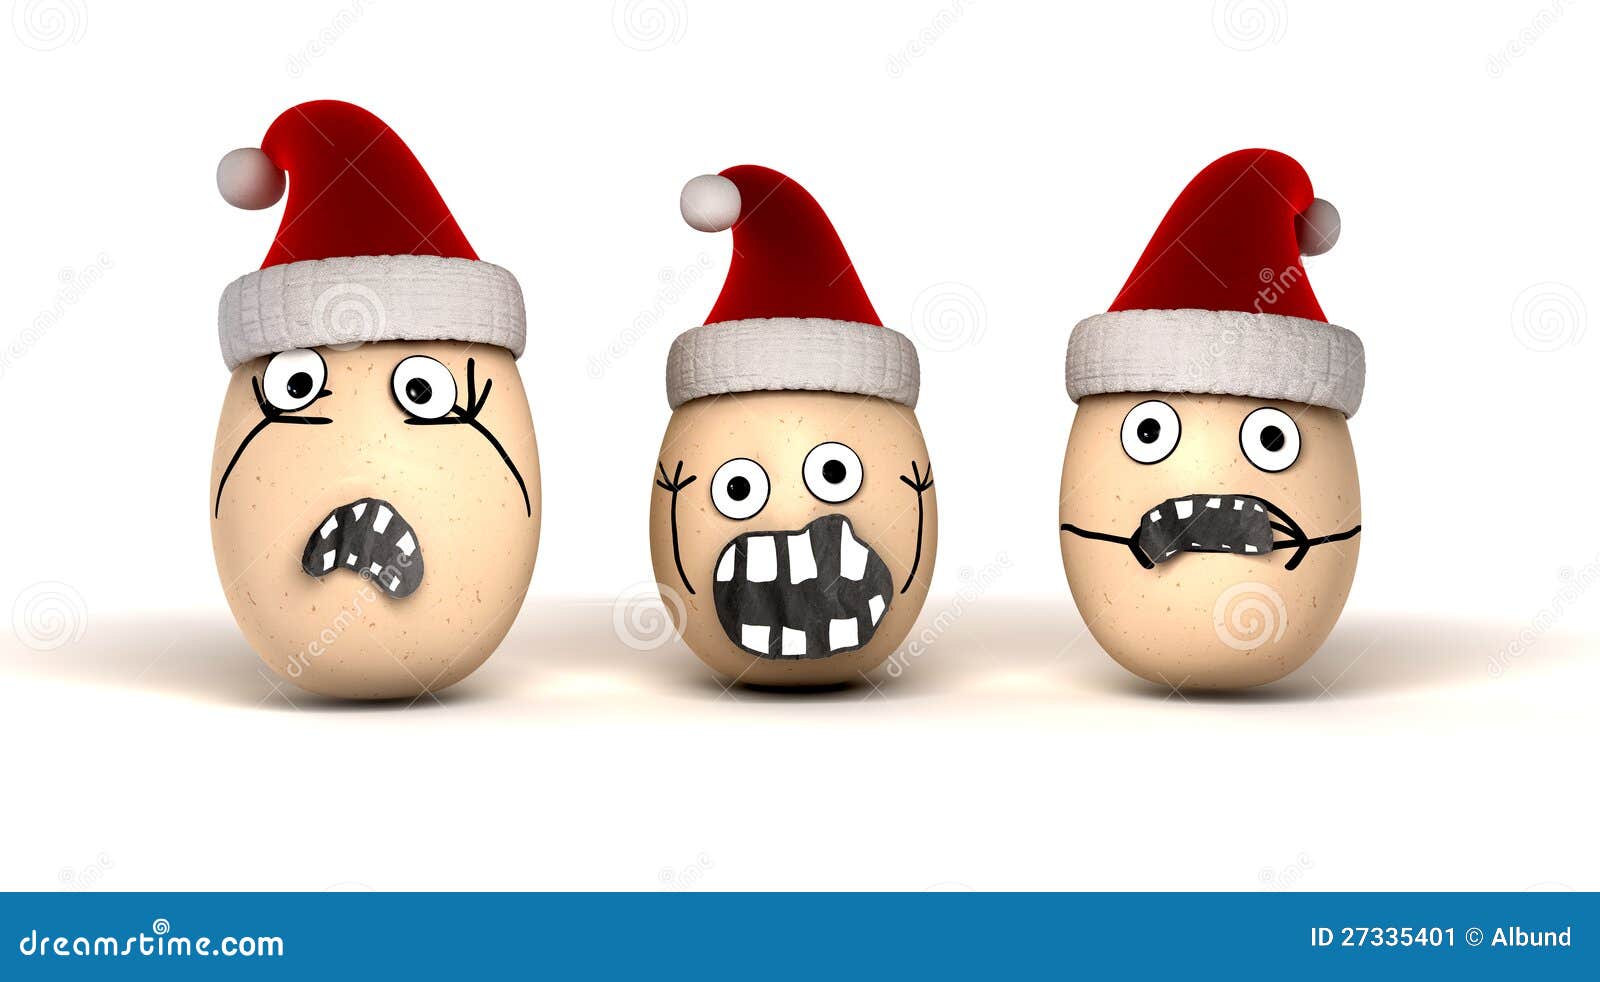 Ovos do Natal imagem de stock. Imagem de personalidades - 27335401